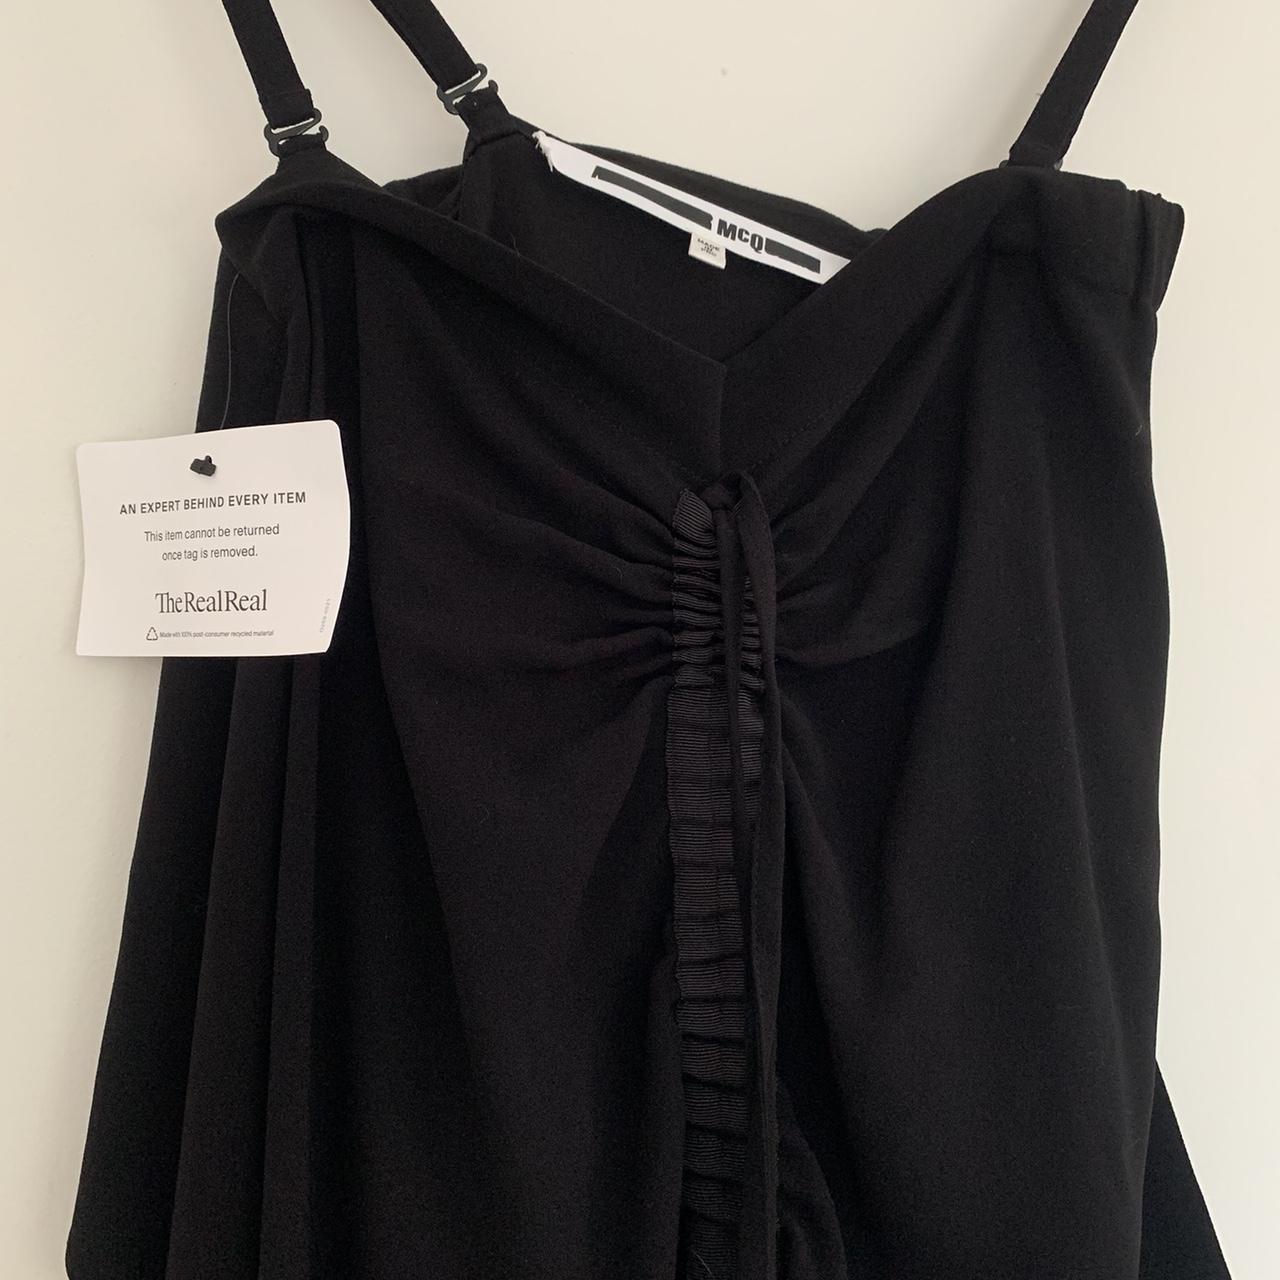 McQ Alexander McQueen Women's Black Dress